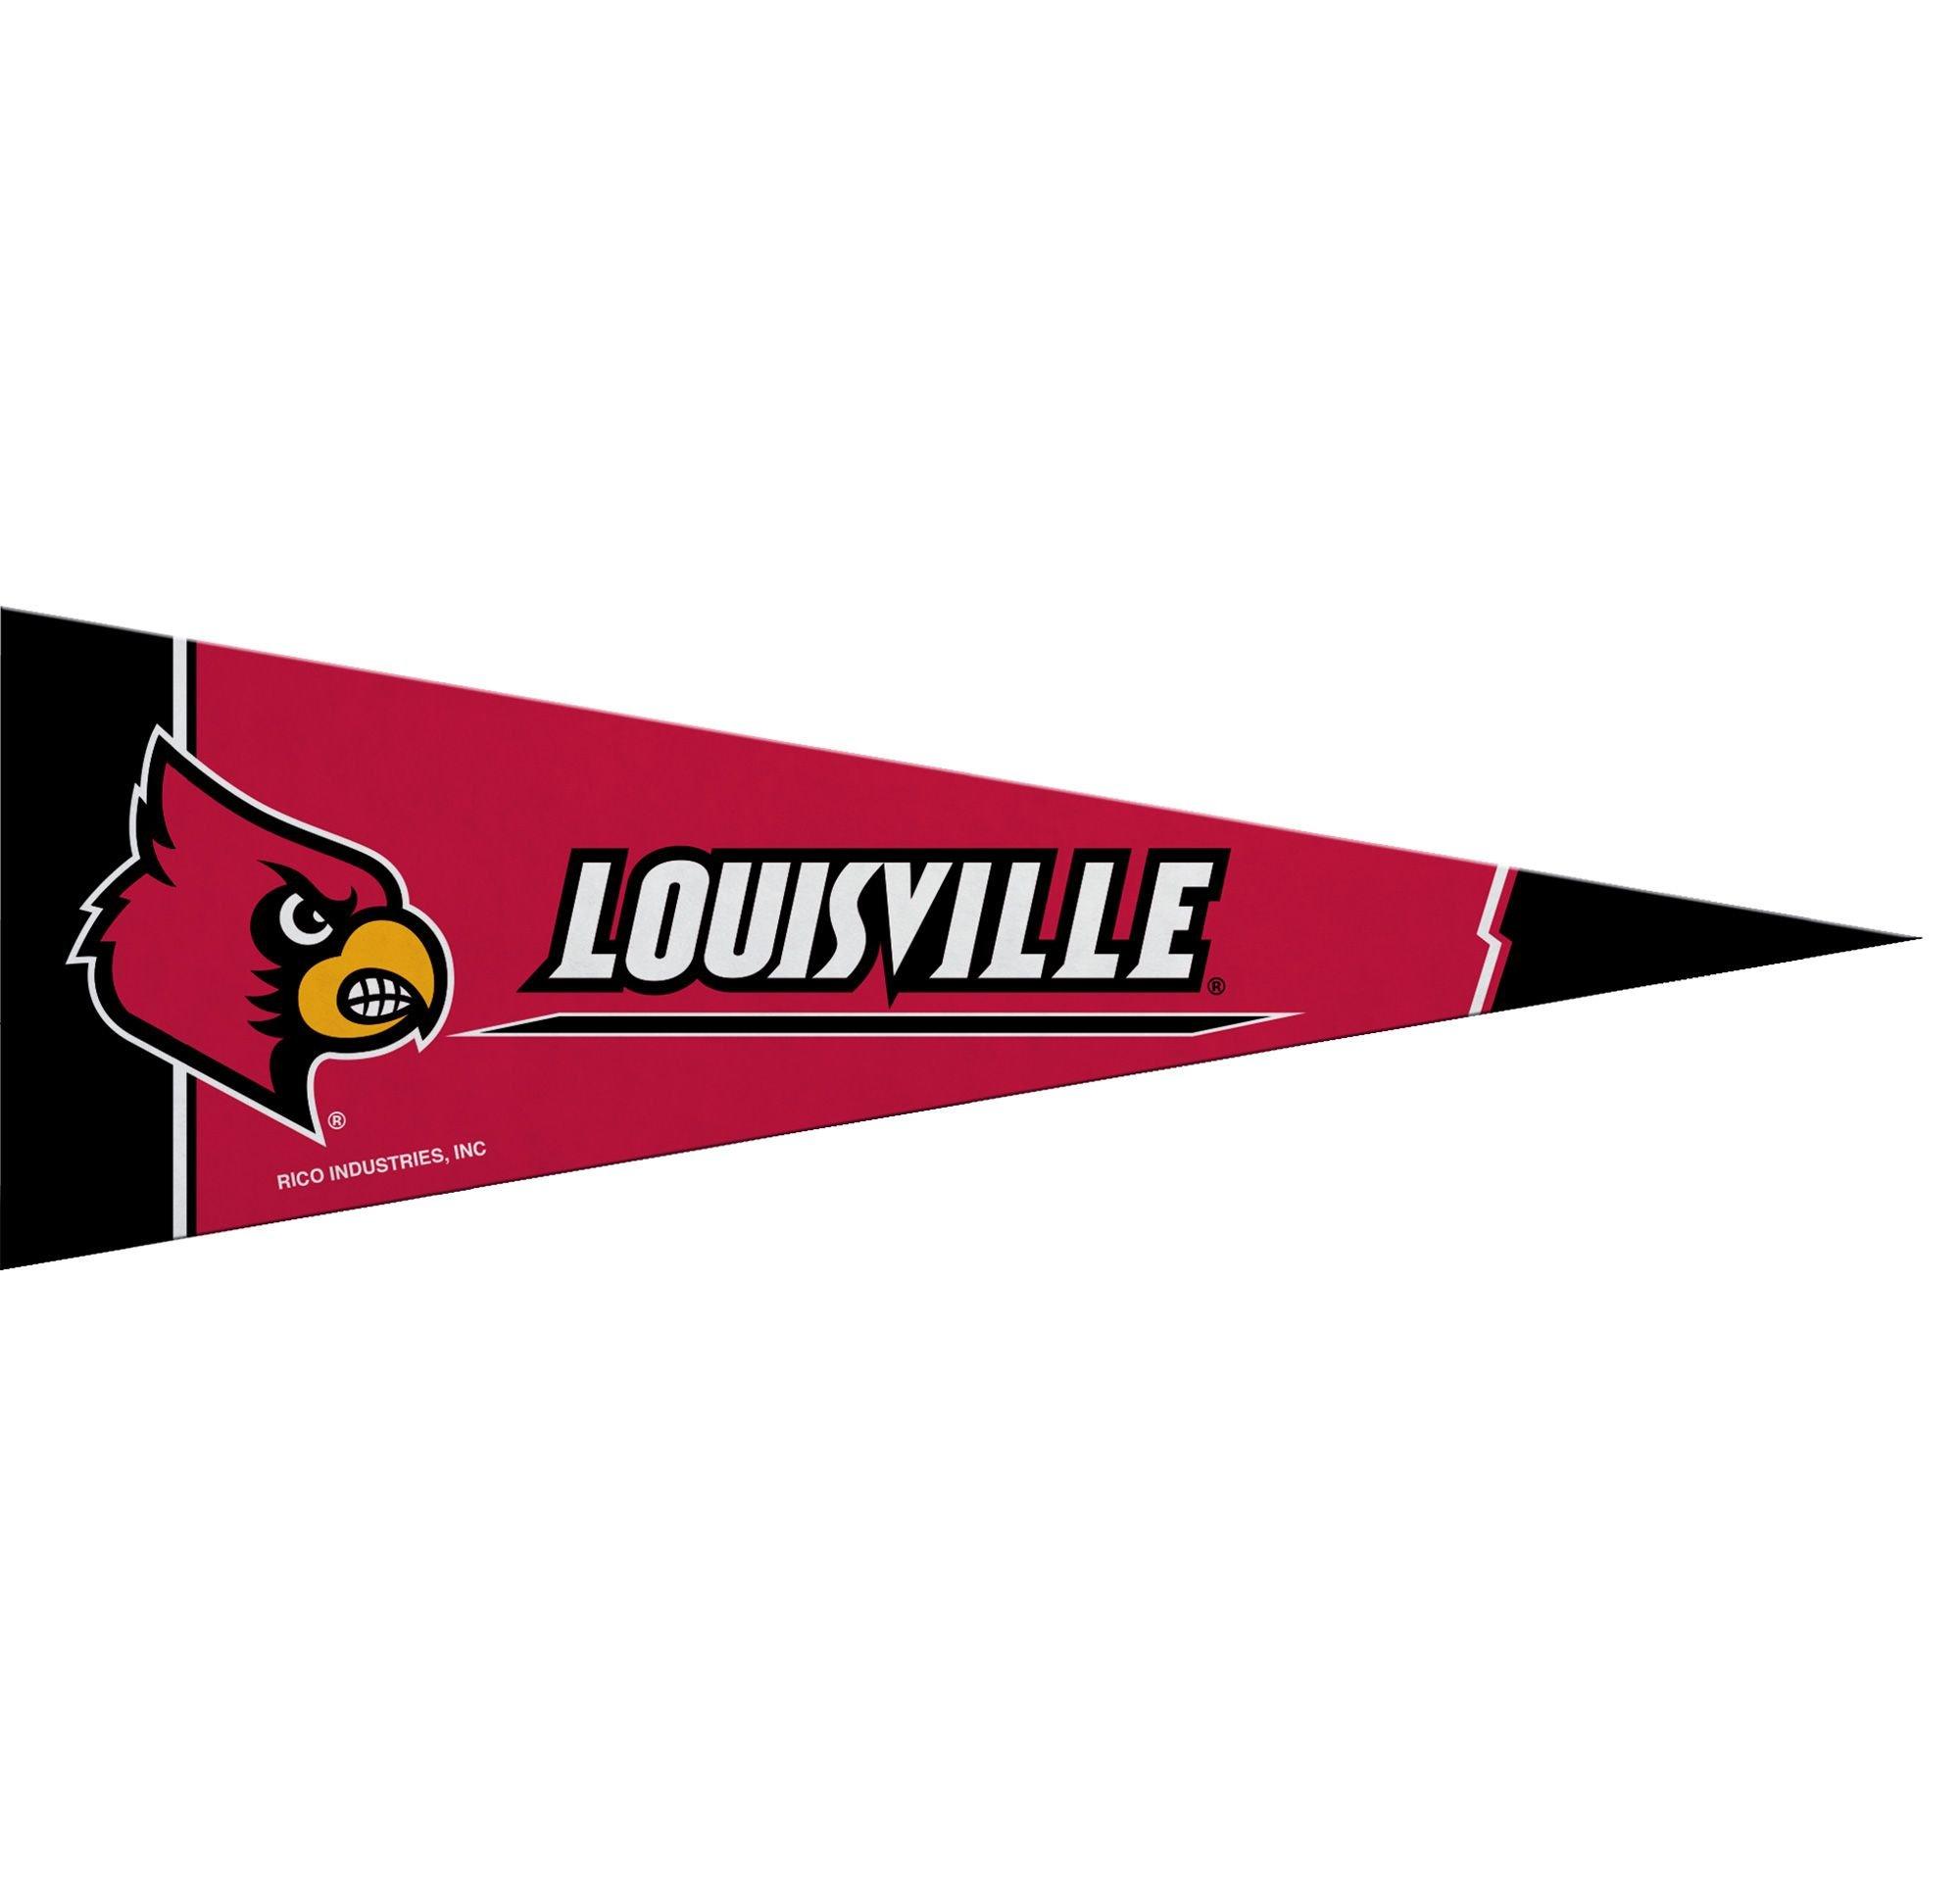 Louisville Cardinals Collegiate 11' x 14' Golf Cart Flag by Bag Boy